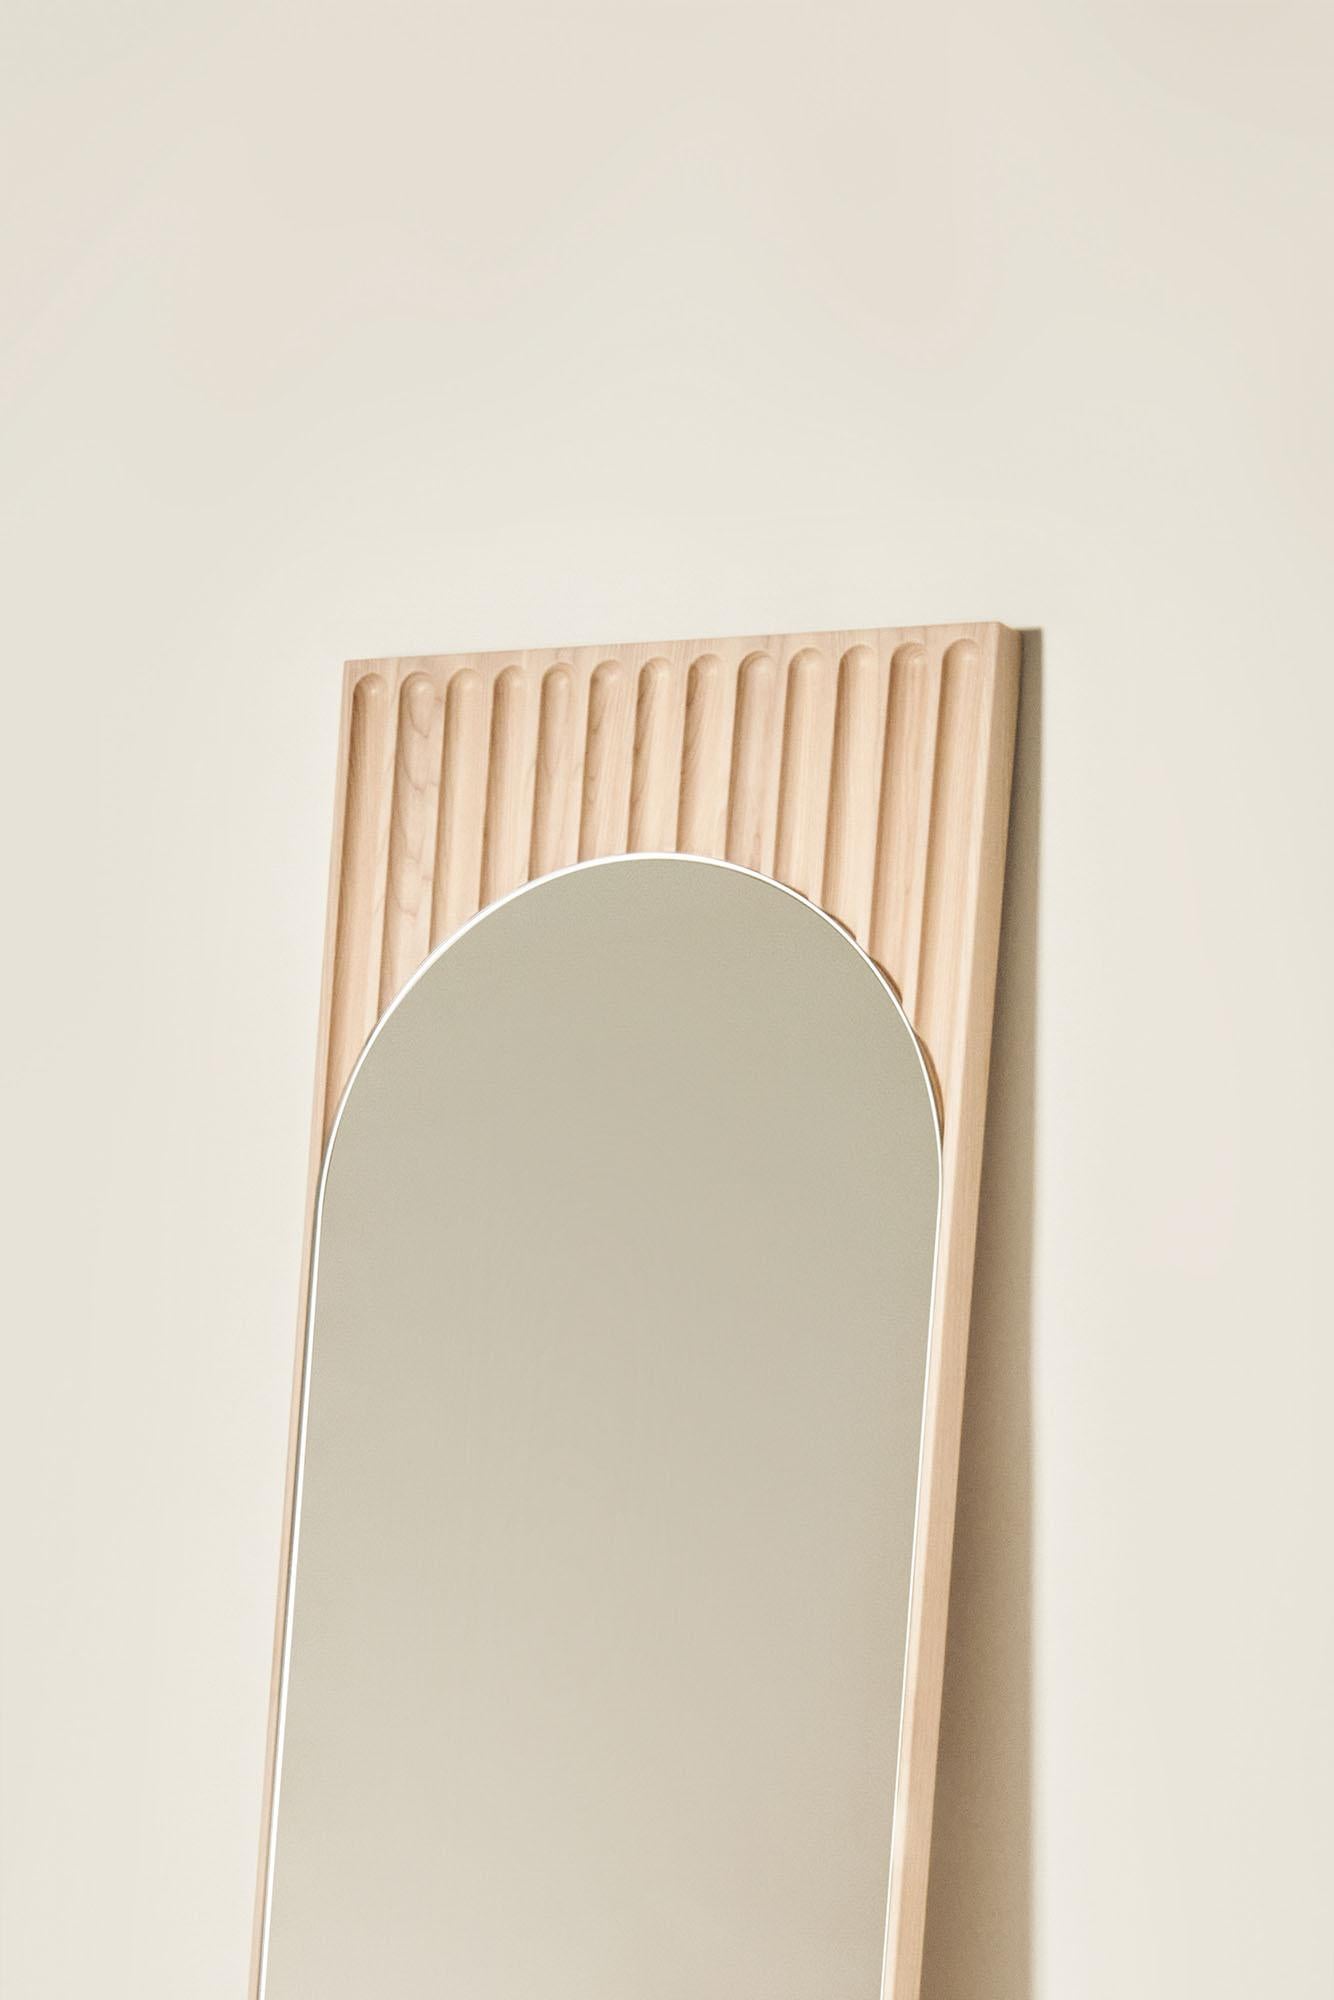 Tutto Sesto Solid Wood Rectangular Mirror, Ash in Natural Finish, Contemporary In New Condition For Sale In Cadeglioppi de Oppeano, VR